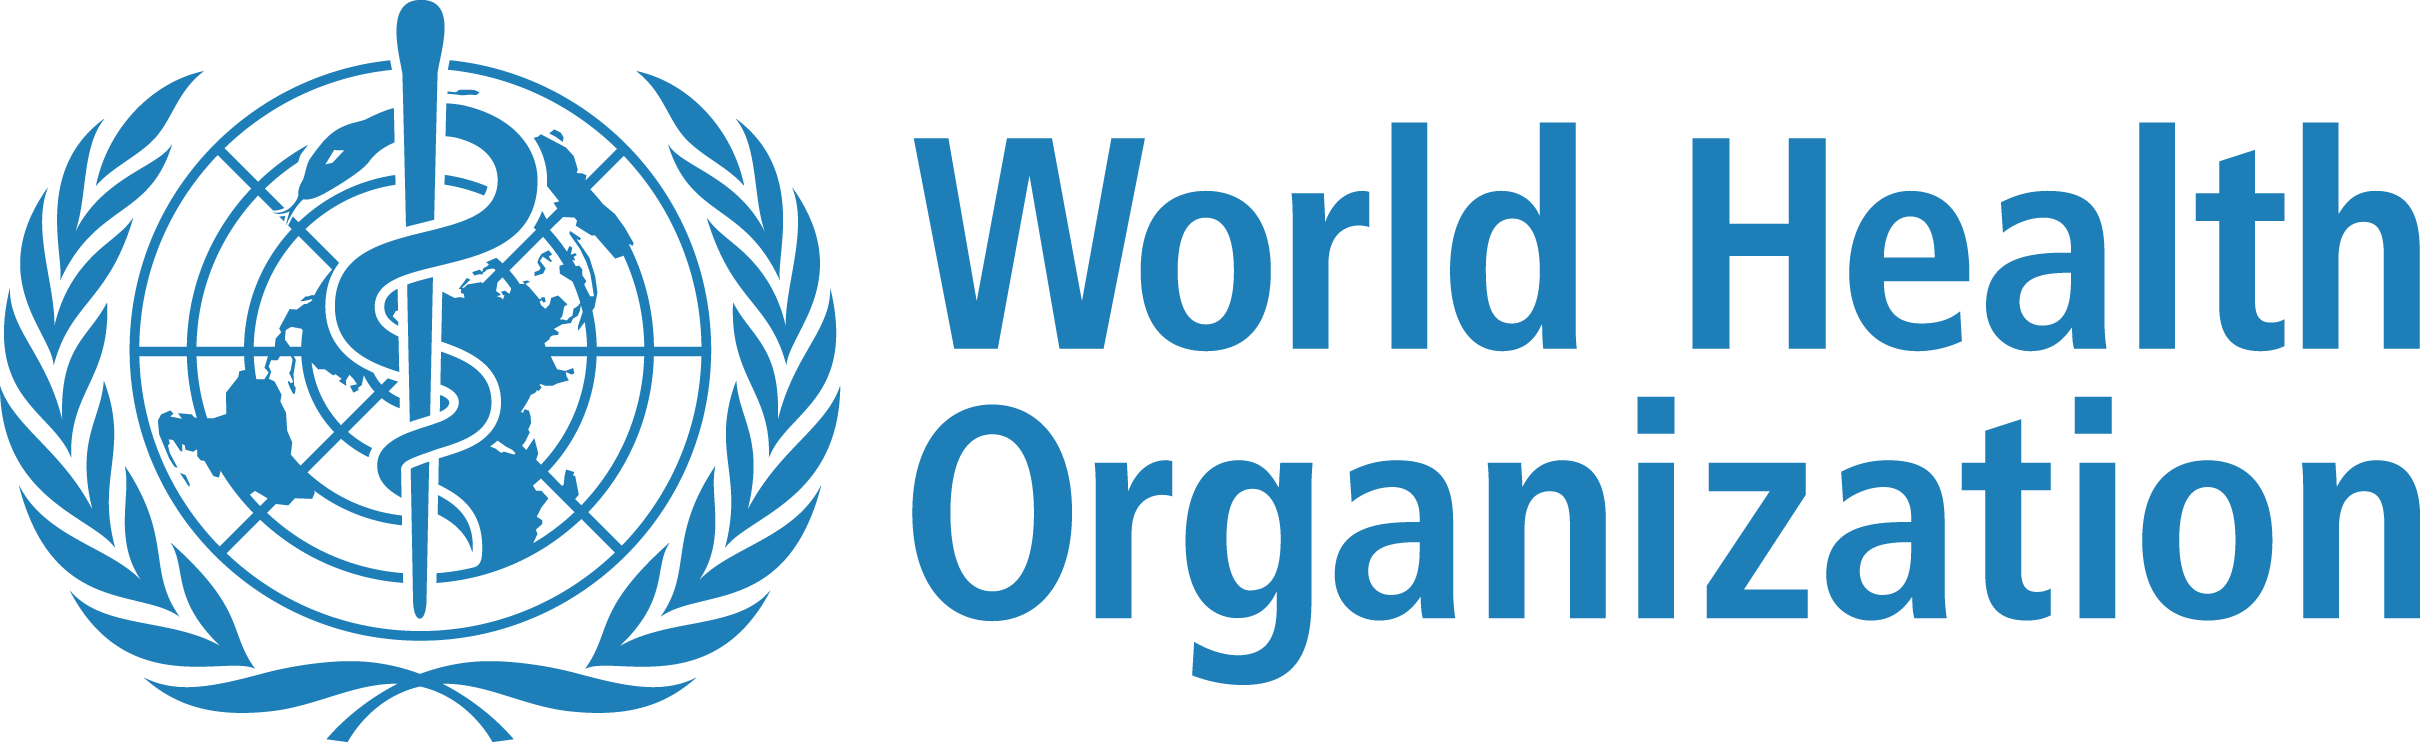 WHO-Logo